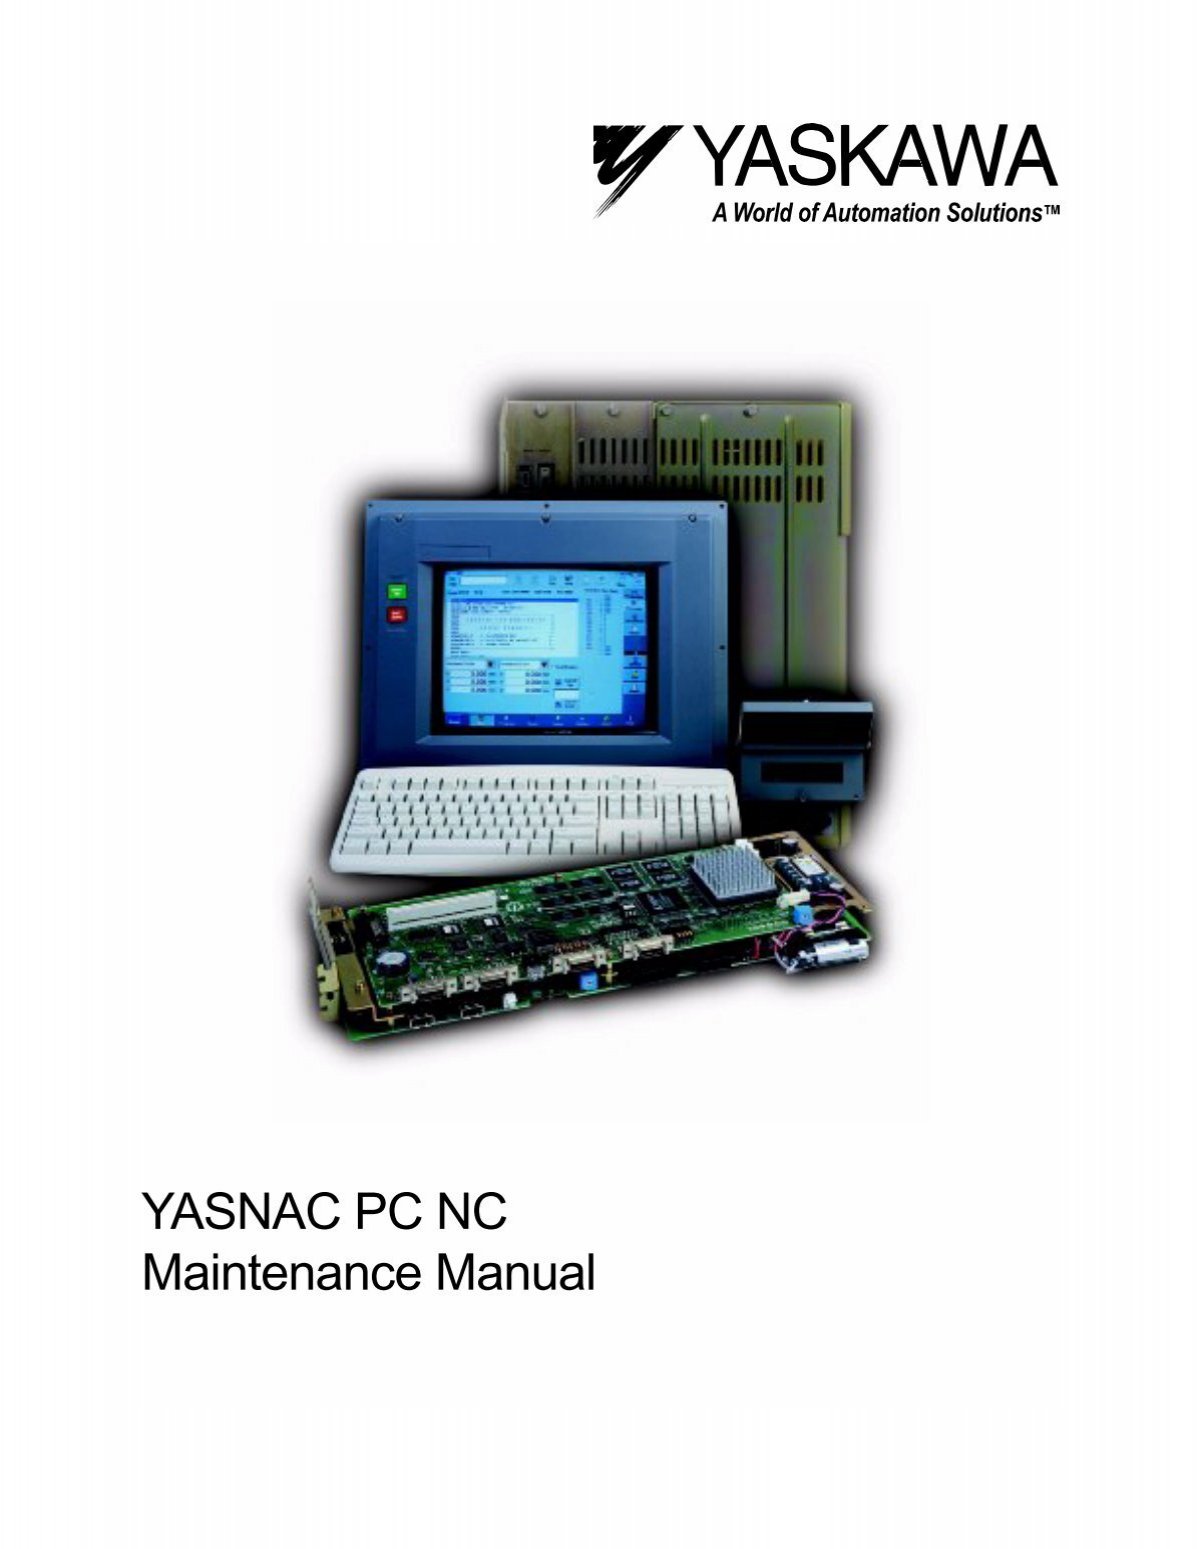 YASNAC PC NC Maintenance Manual - Yaskawa